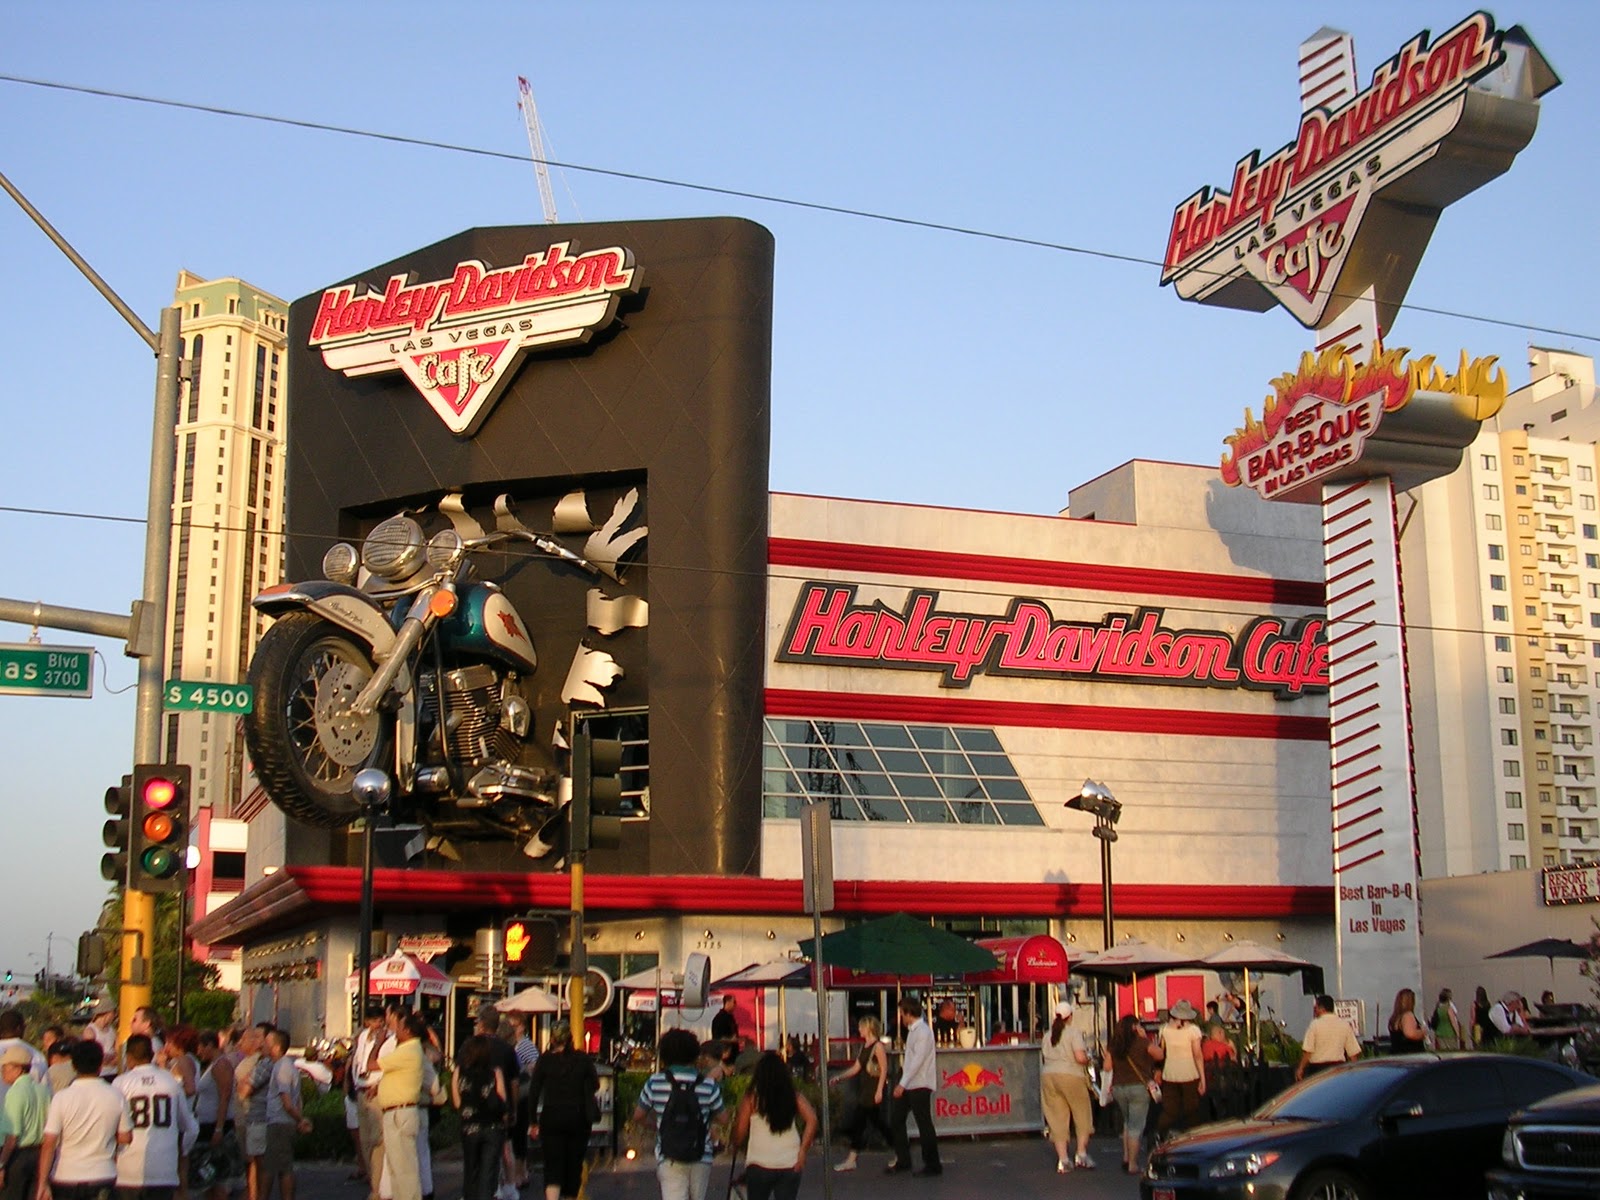  Harley Davidson Las Vegas 